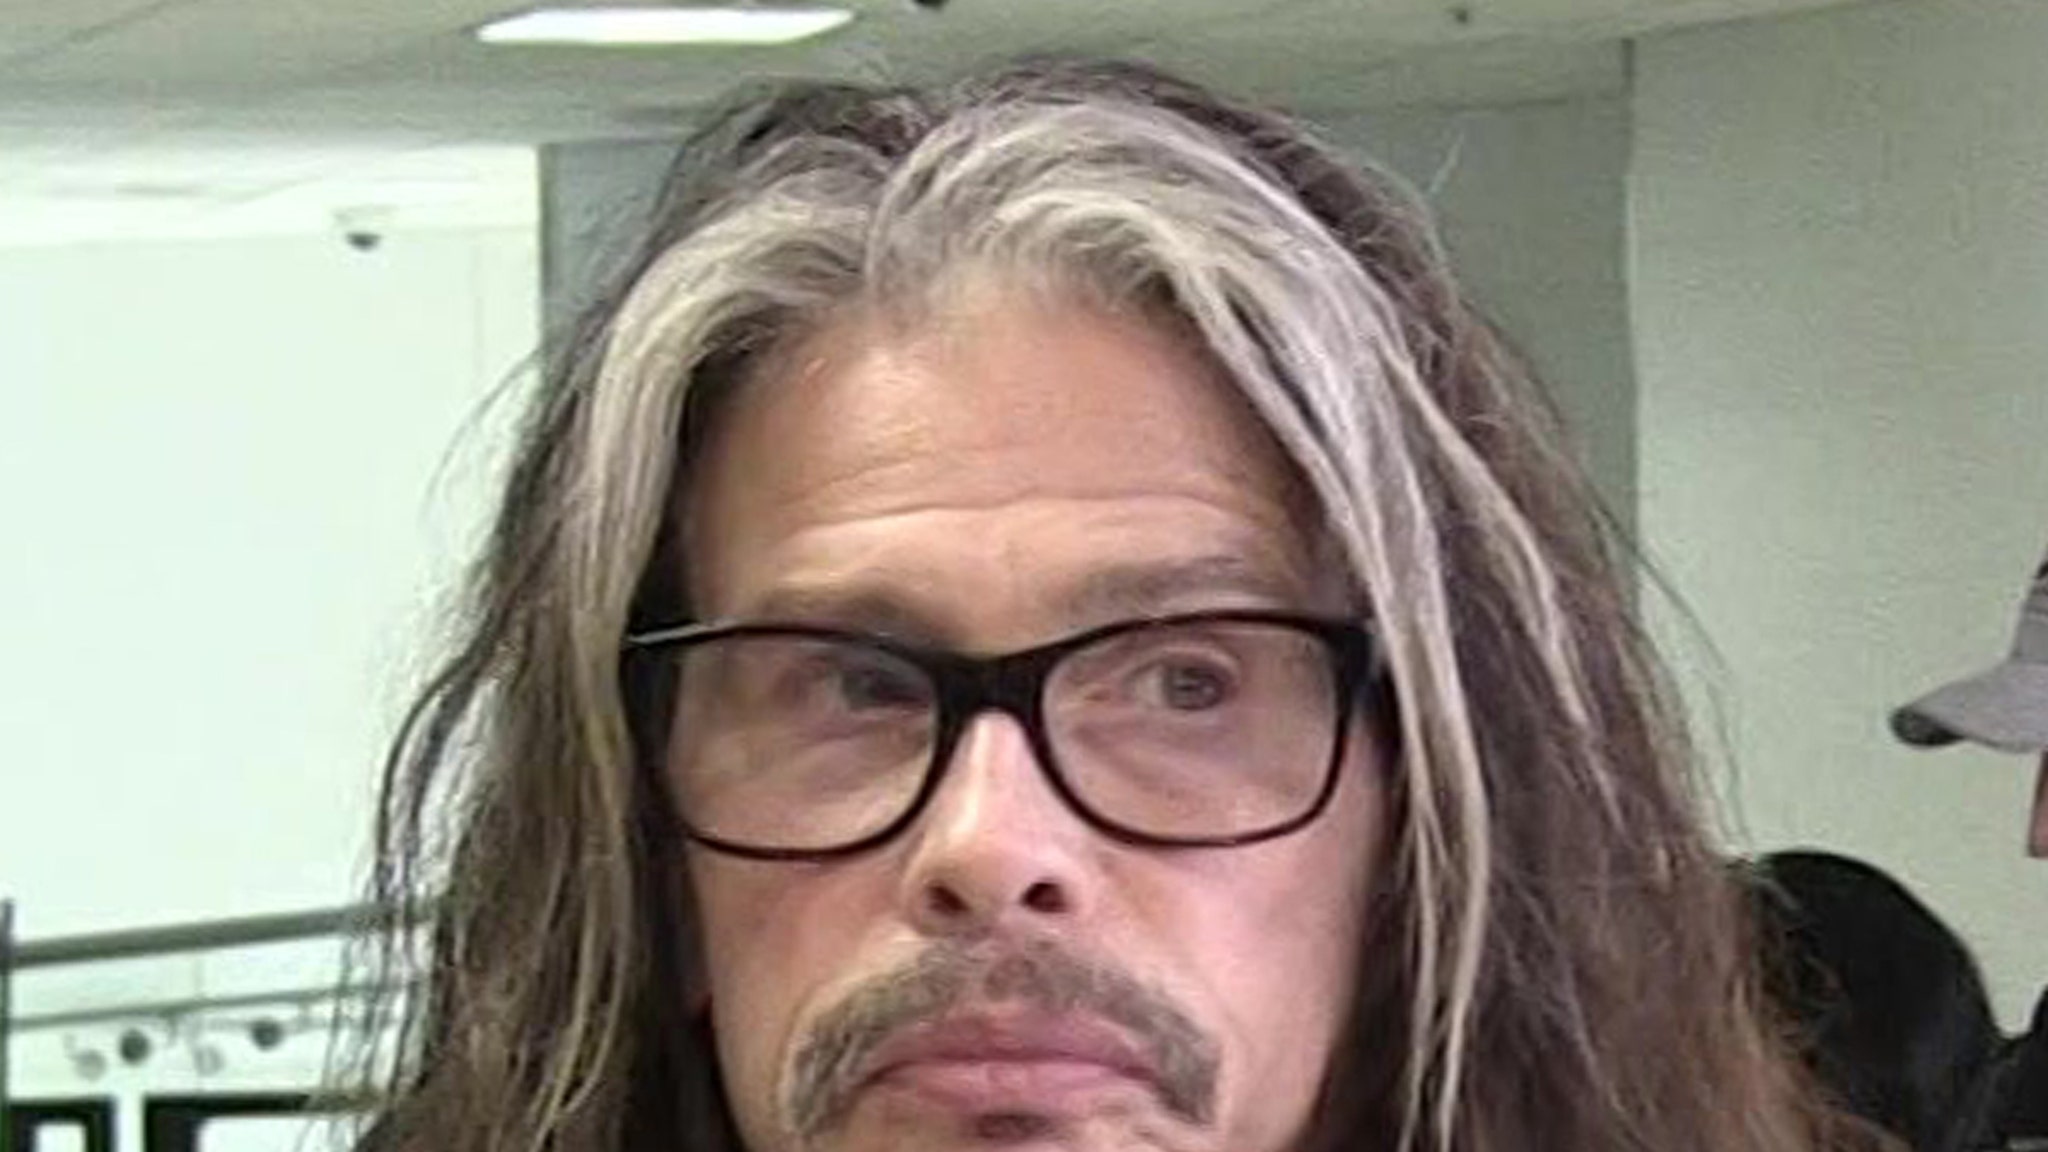 Aerosmith Singer Steven Tyler Enters Rehab After Relapse